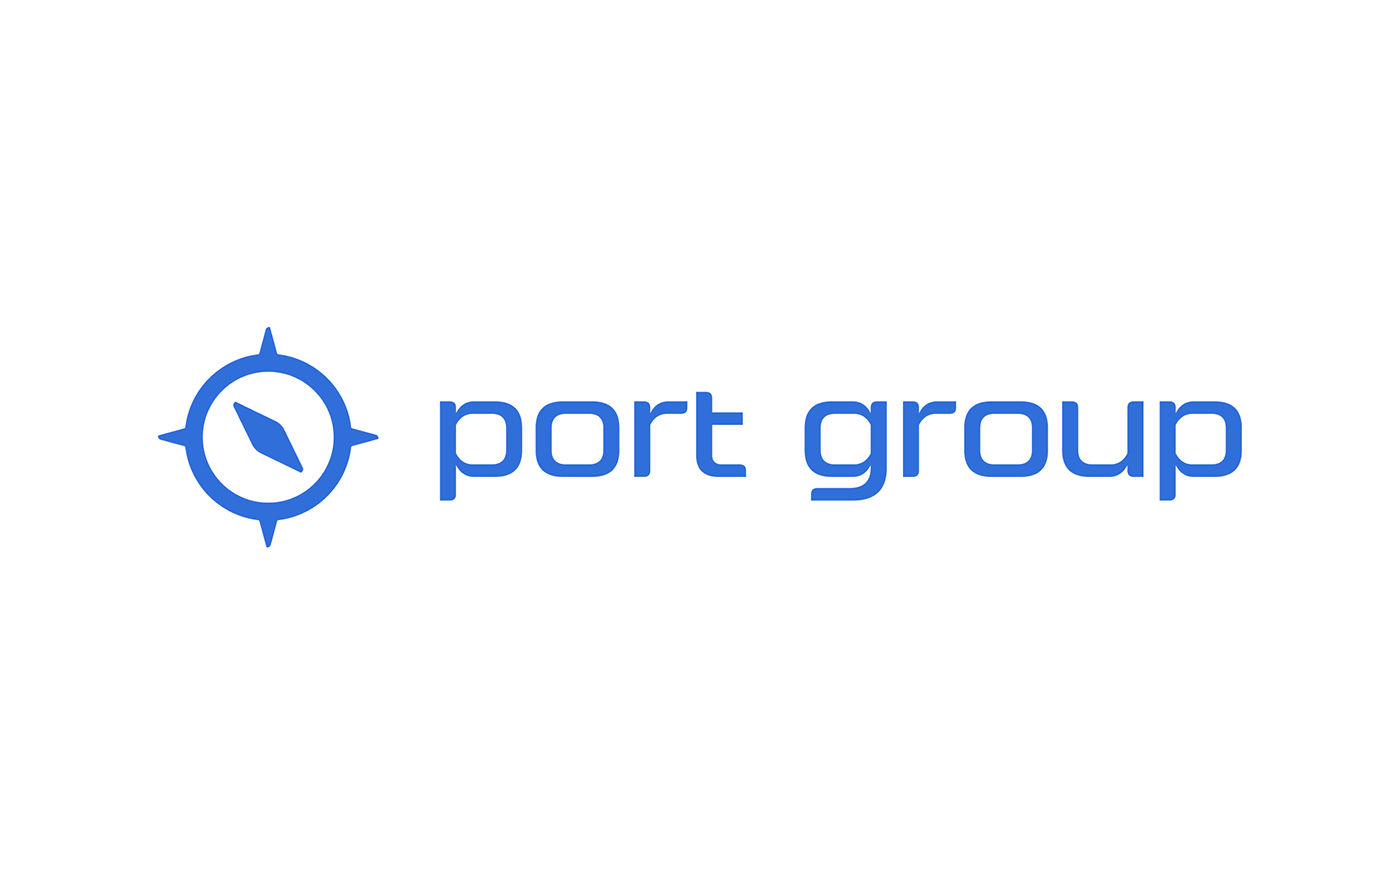 brand branding  Cargo identity logo Logo Design Logotype port shipping visual identity